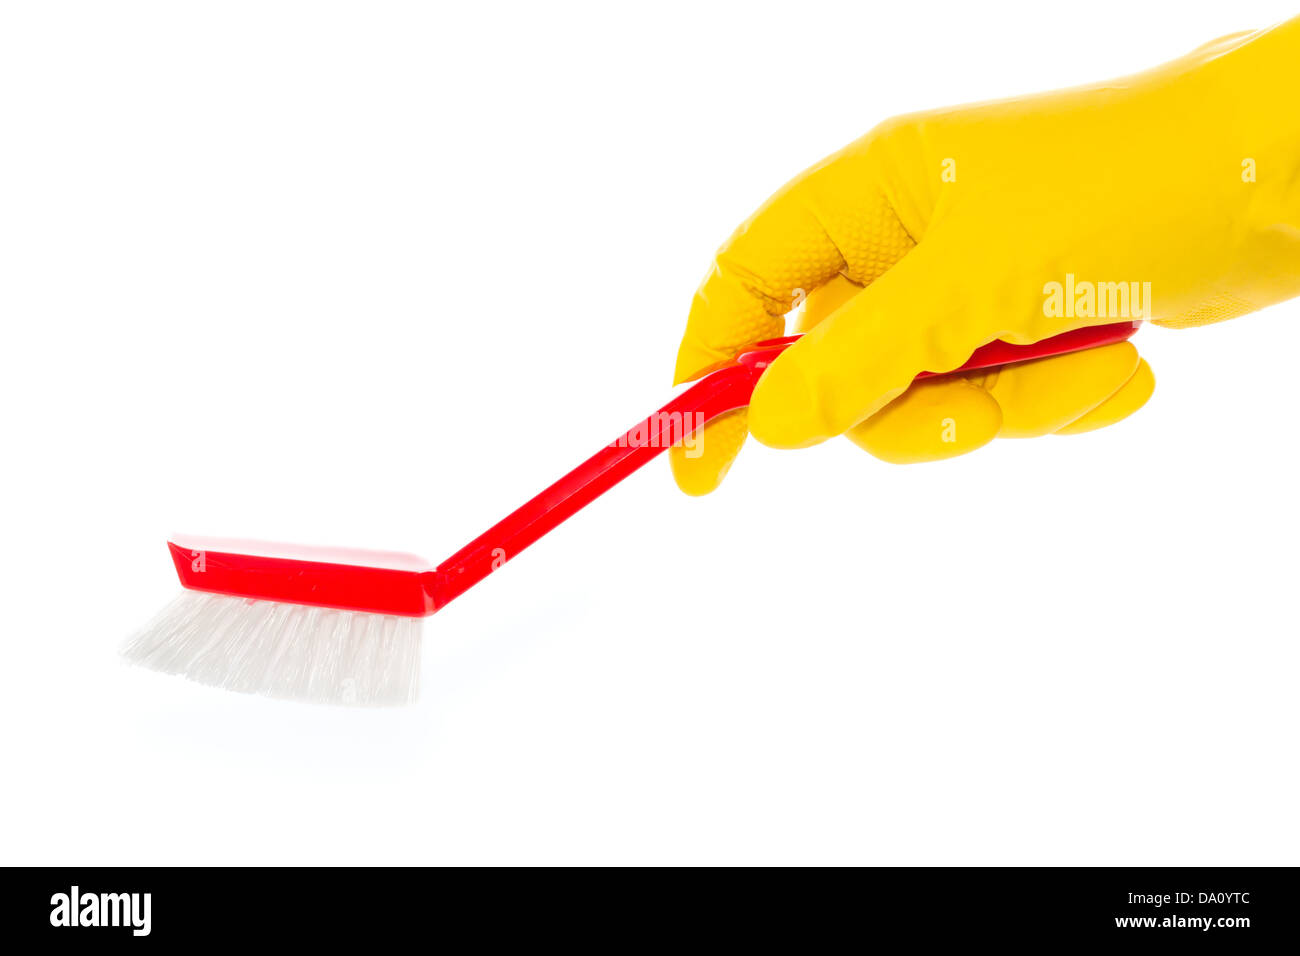 Gant en caoutchouc dans la main avec une brosse à vaisselle rouge contre fond blanc Banque D'Images